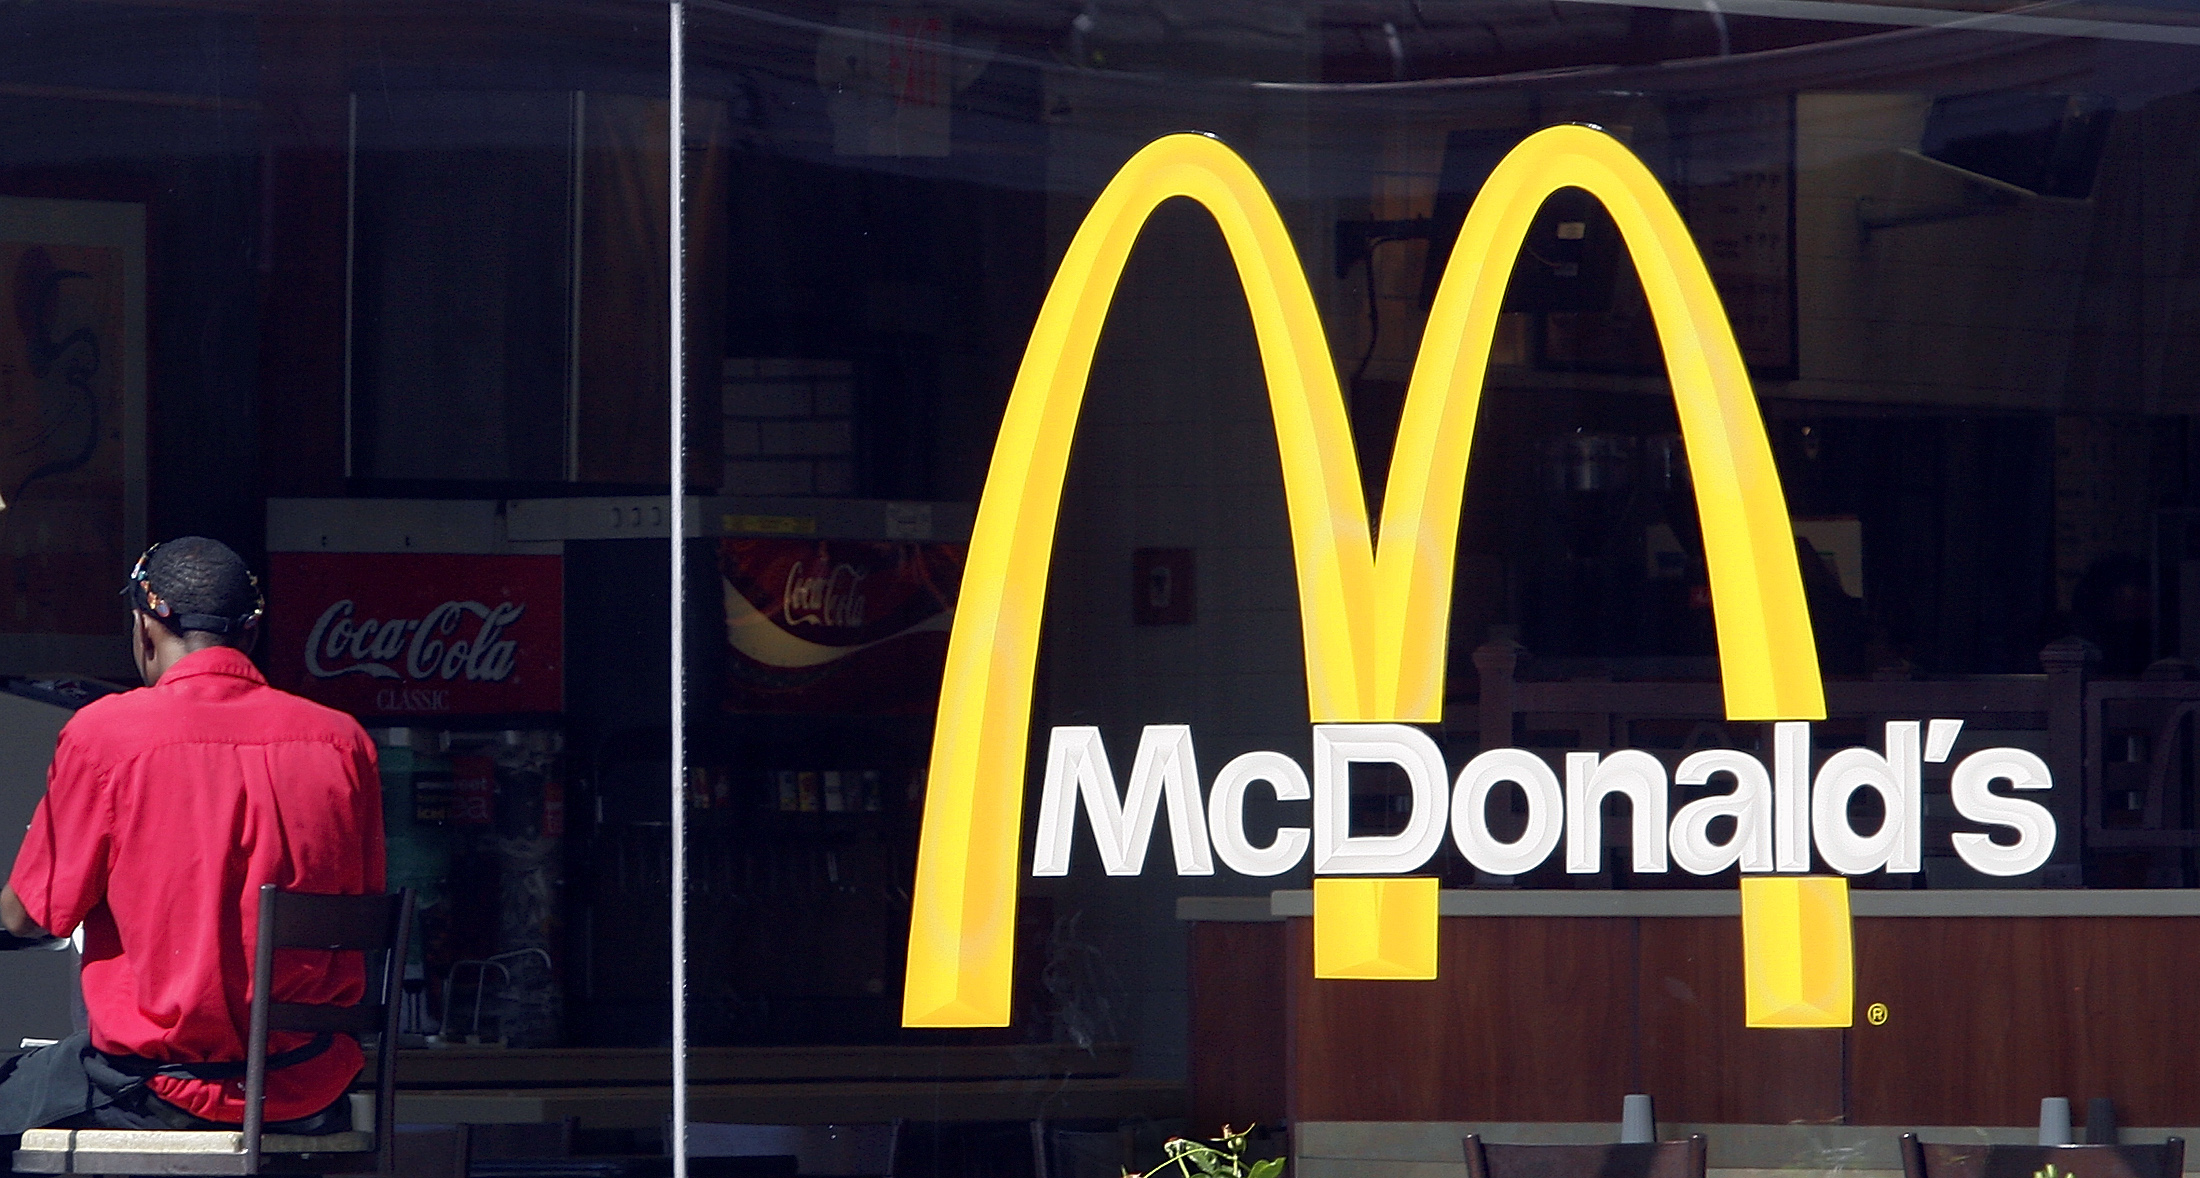 Gasläckan hade spridit sig via läskmaskinen och tio av McDonalds-gästerna smittades. En person avled av läckan.